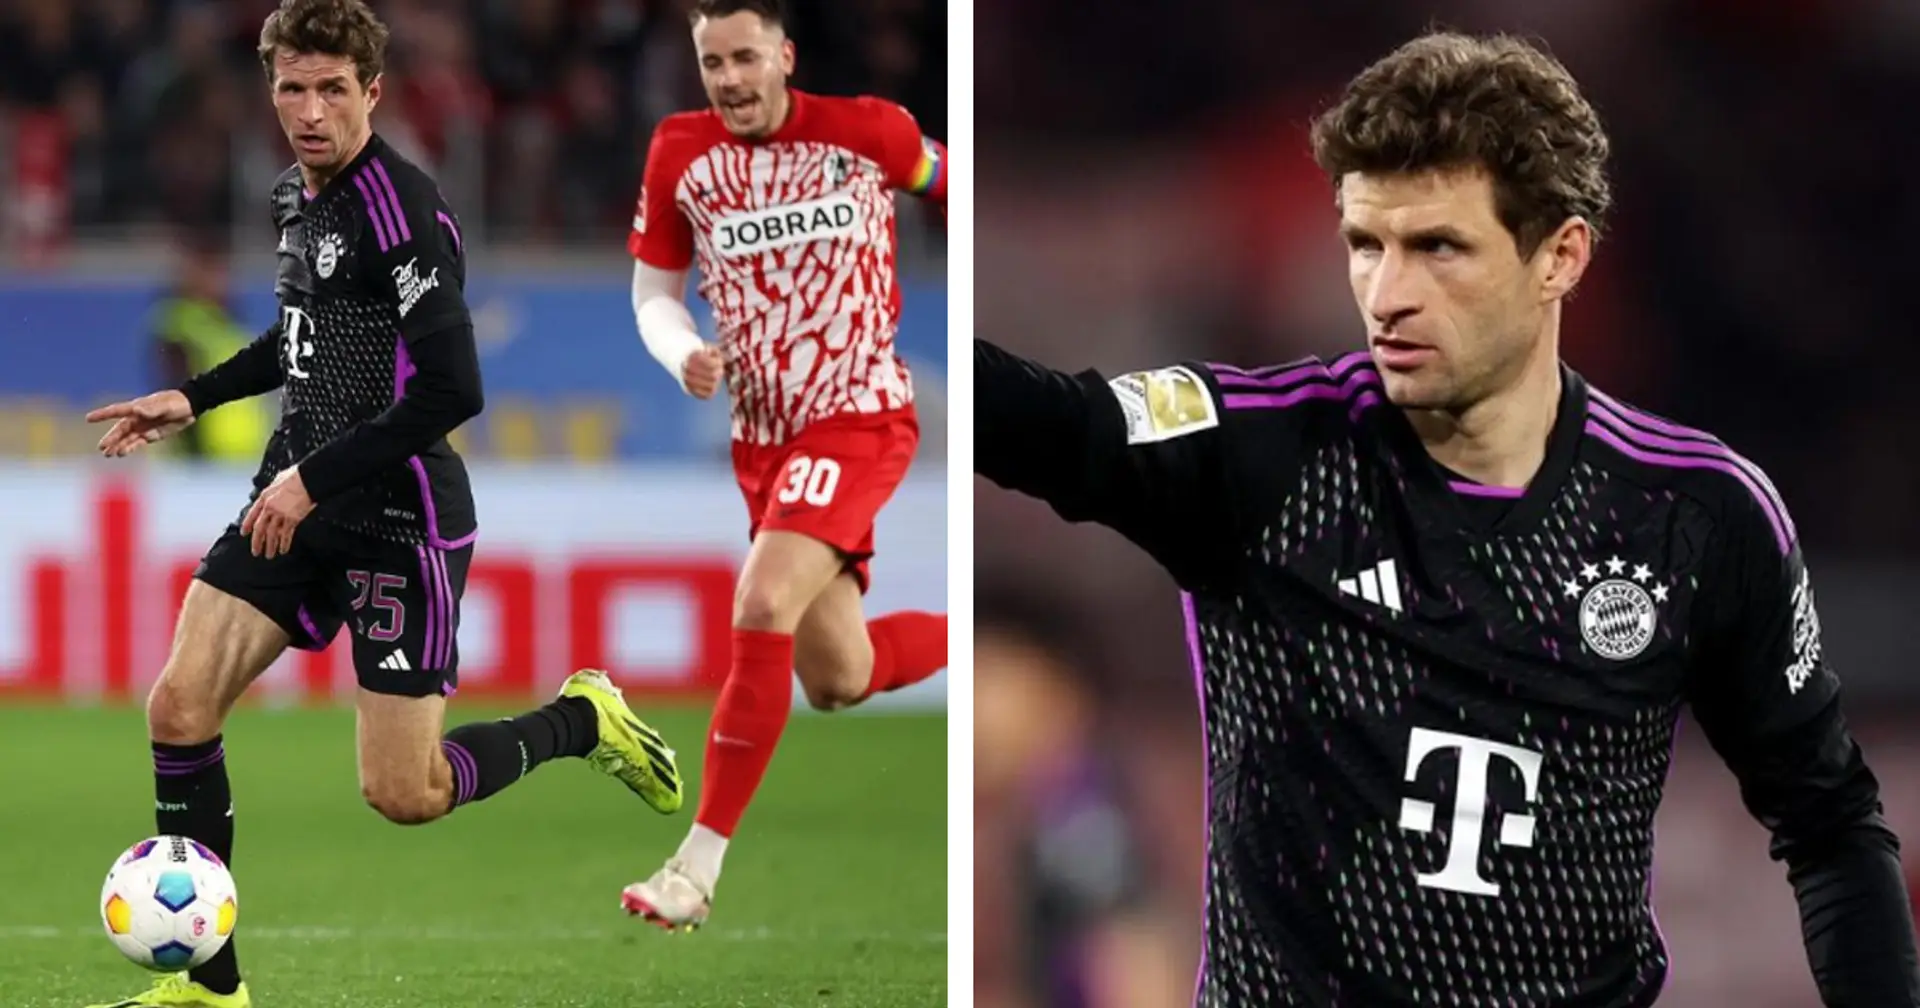 "Glückwunsch zum Tor nach der langen Leidenszeit": Müller gratuliert seinem Gegner, auch wenn das Remis ihm wehtut